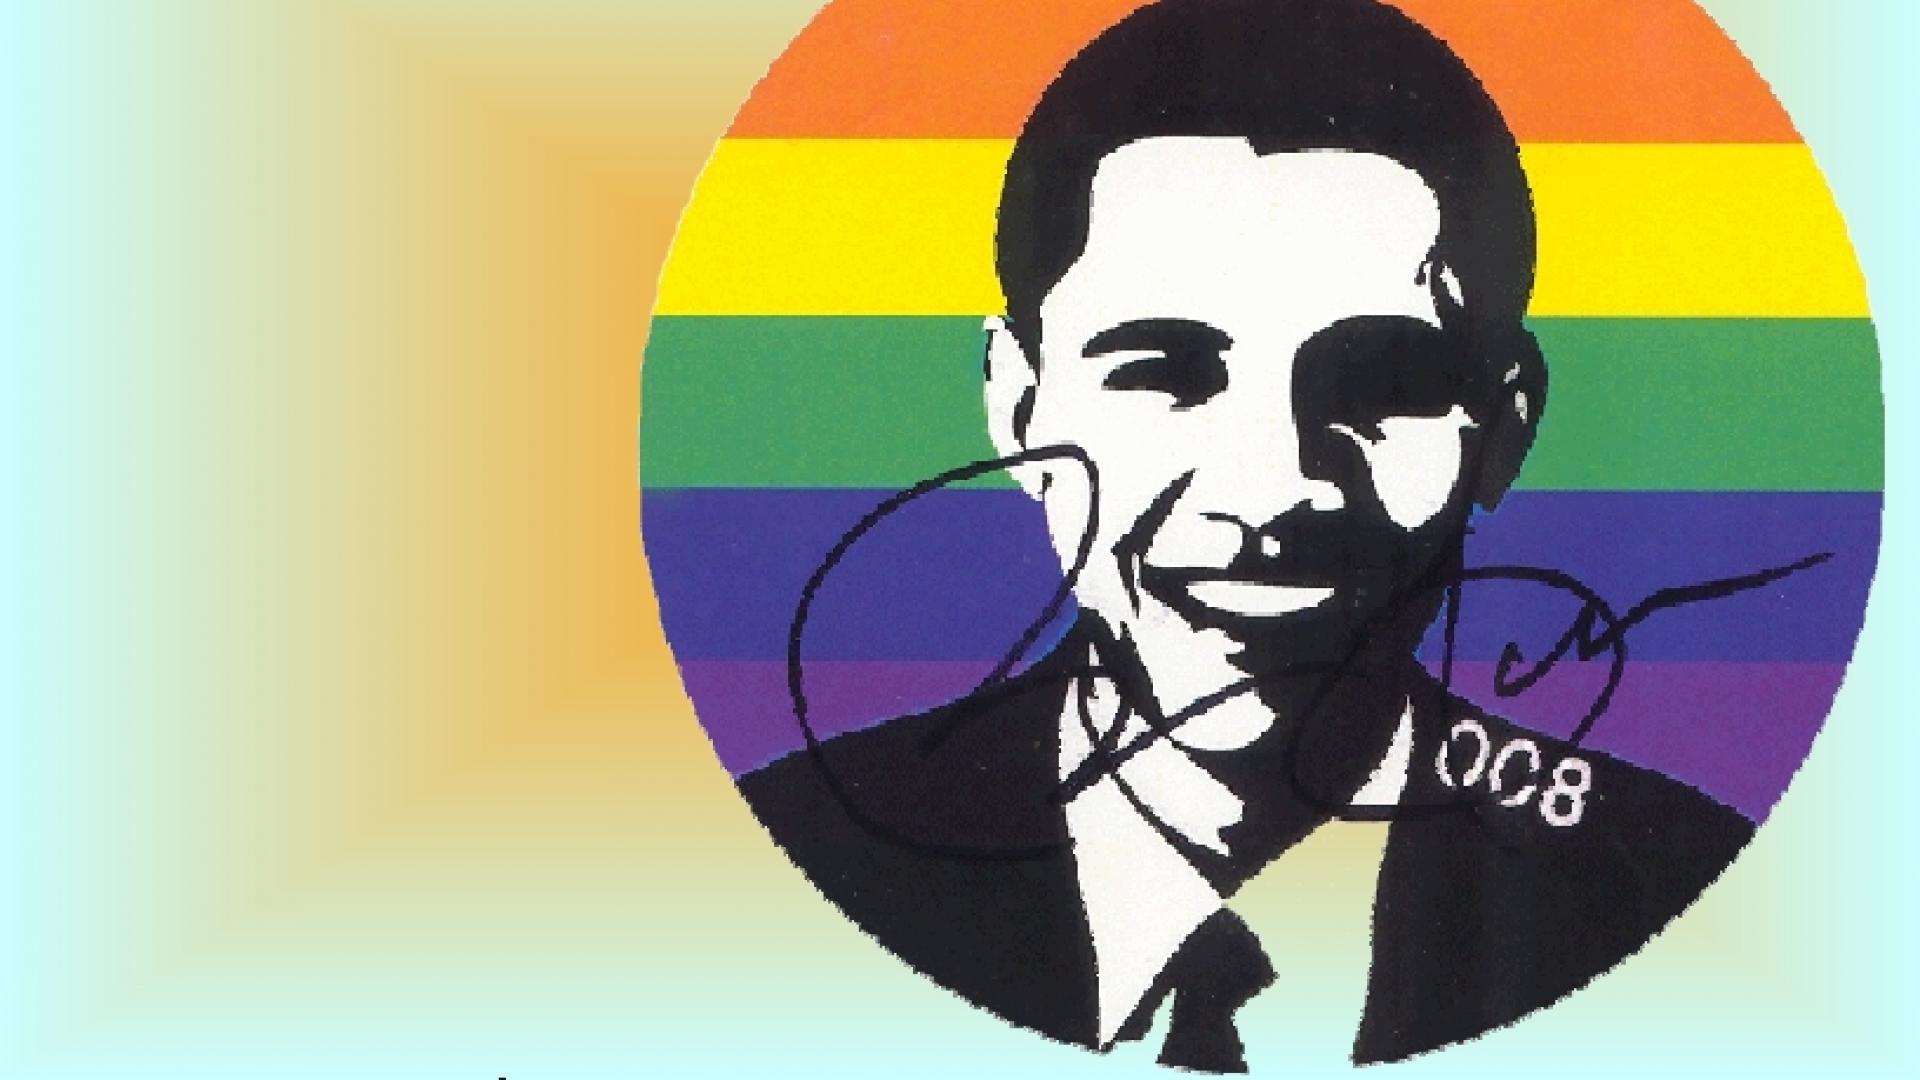 Figuurtje van Obama tegen regenboogkleurenachtergrond